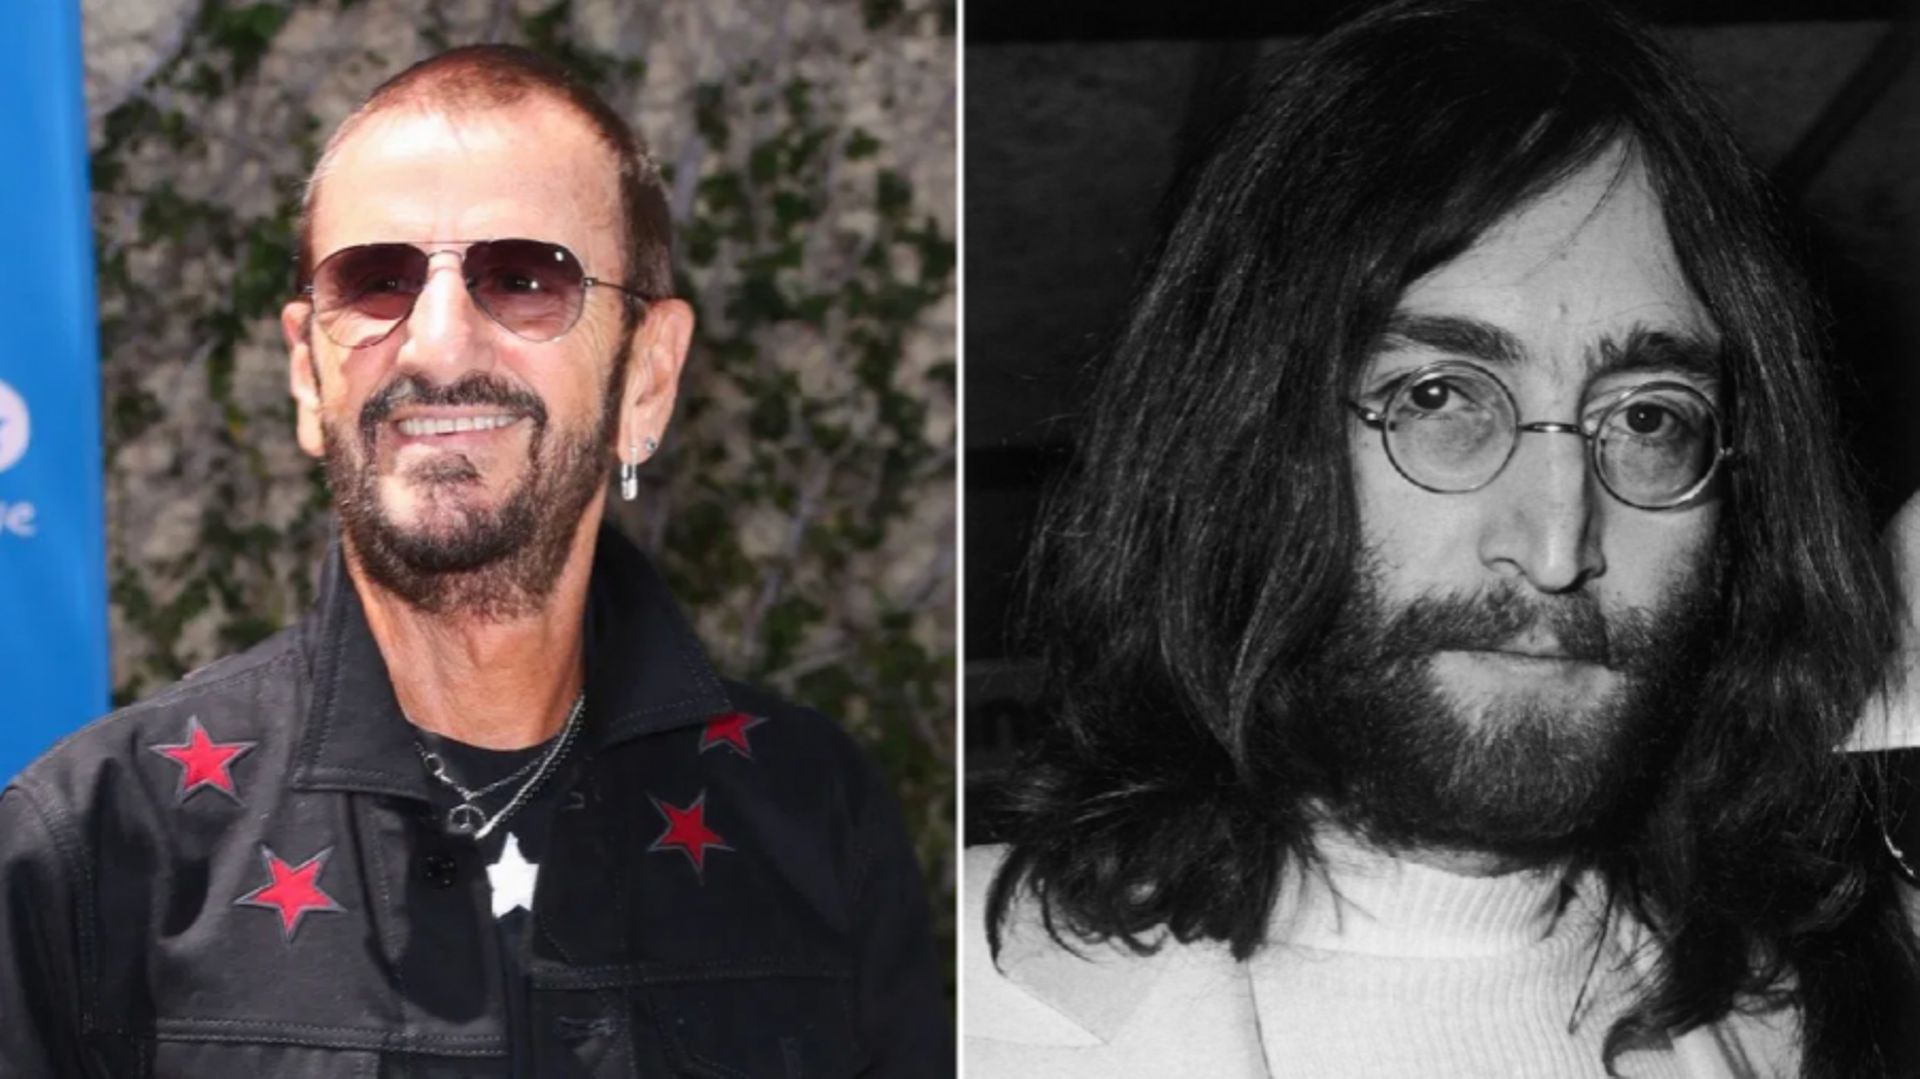 [Zapping 21] Ringo Starr félicite John Lennon pour son anniversaire ... un mois trop tôt